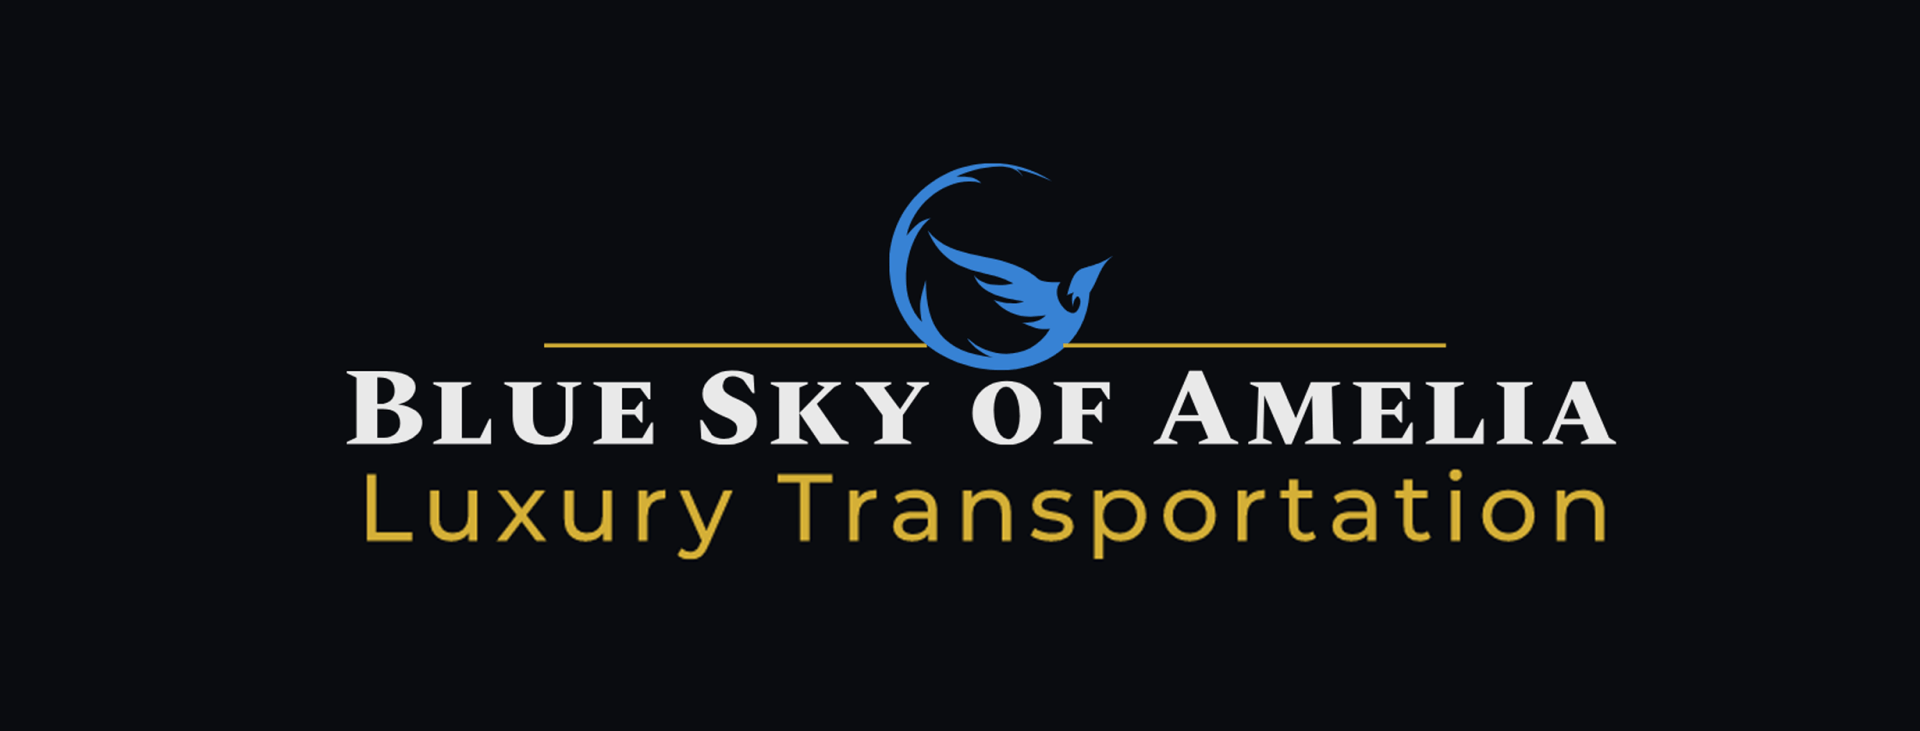 Blue Sky of Amelia Transportation logo